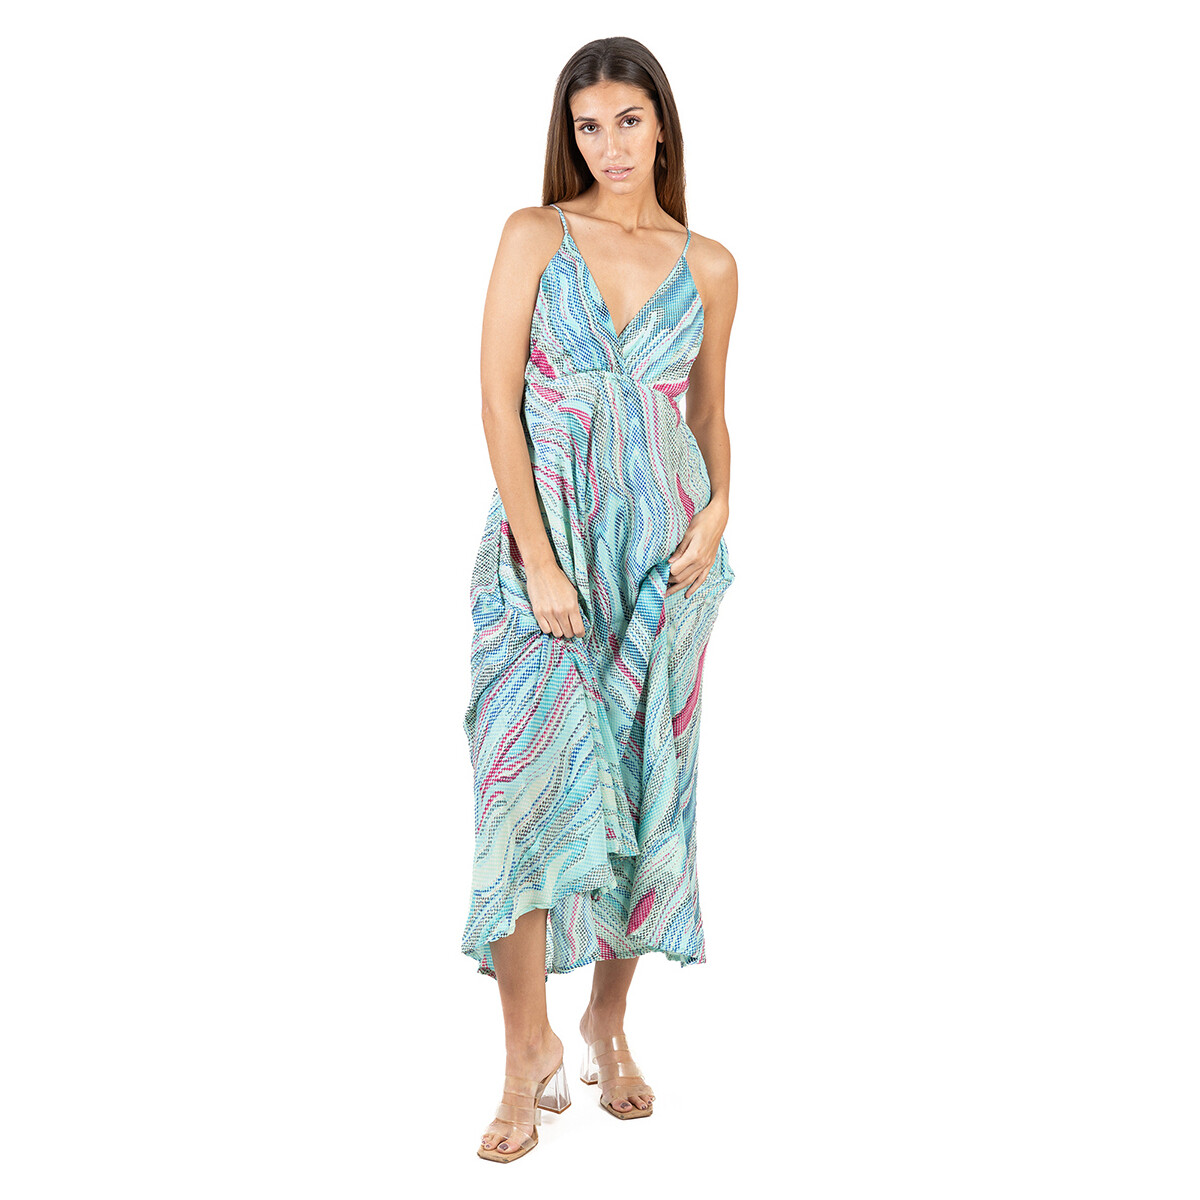 Textil Ženy Společenské šaty Isla Bonita By Sigris Dlouhé Midi Šaty Modrá